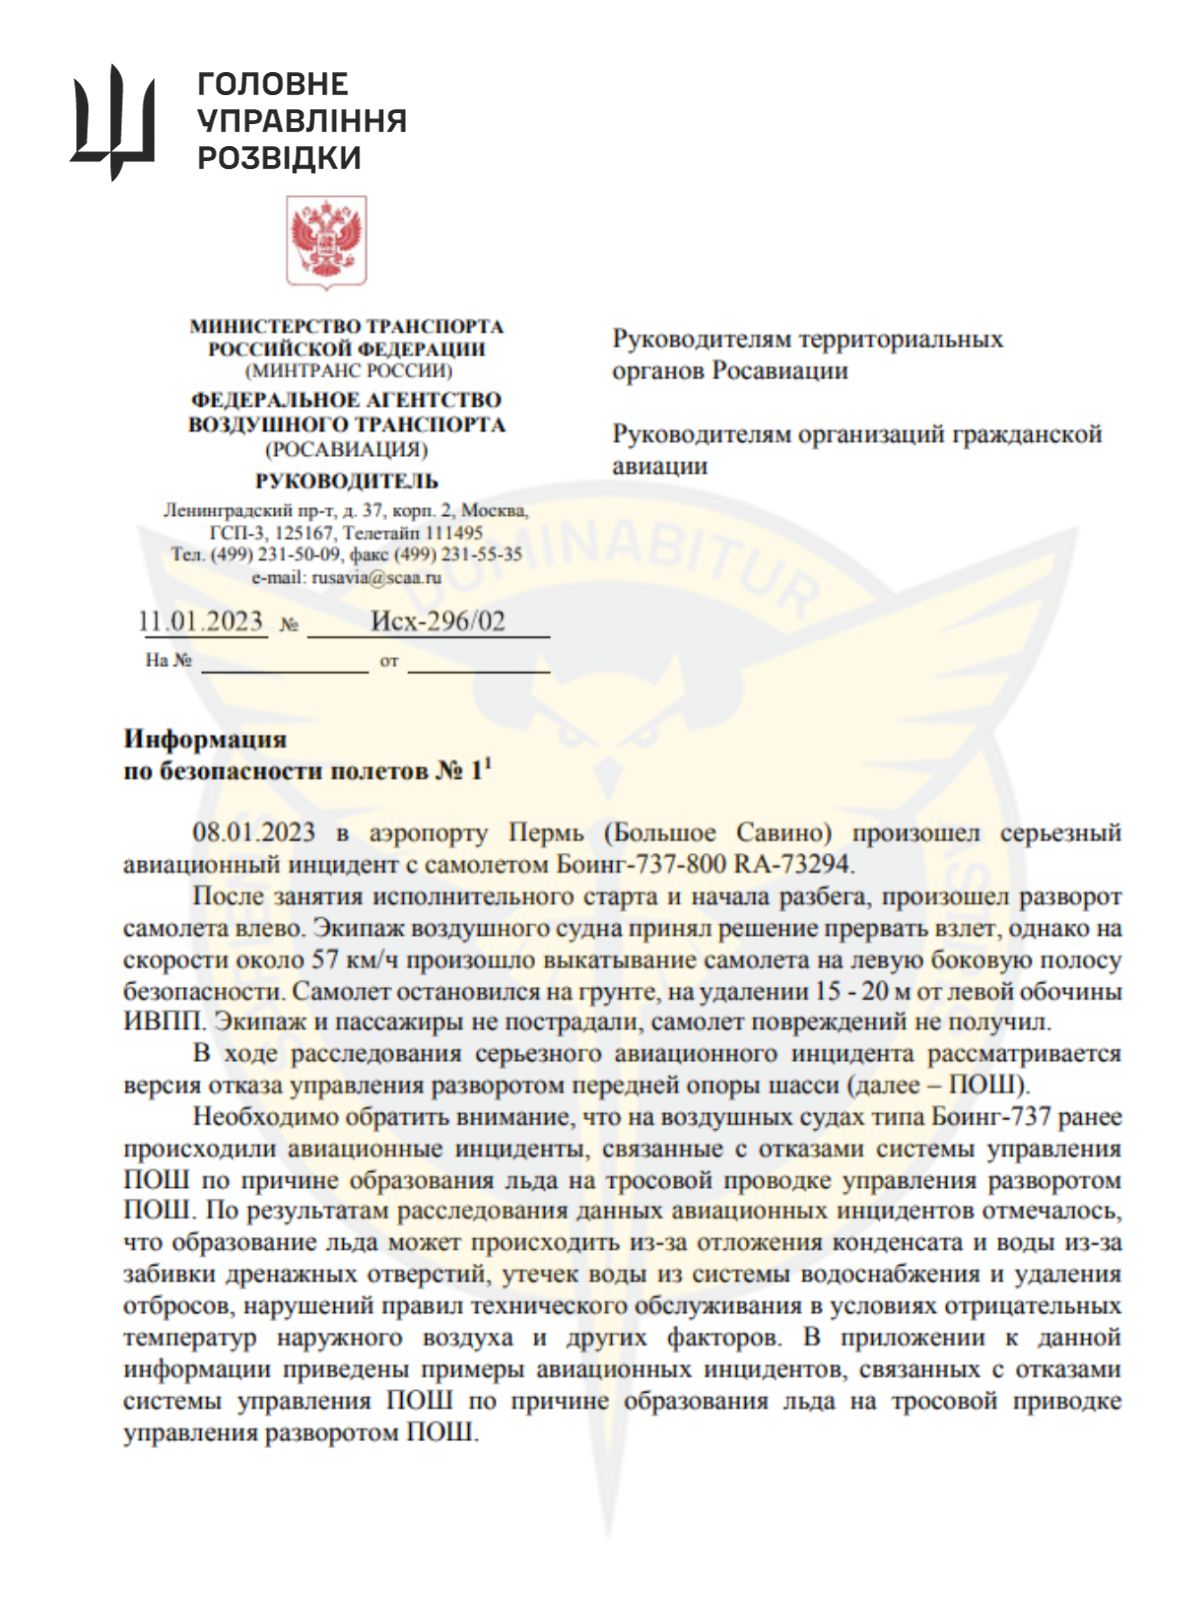 Воєнна розвідка України здійснила кіберспецоперацію щодо &laquo;росавіації&raquo; ― санкції прискорюють авіаколапс рф